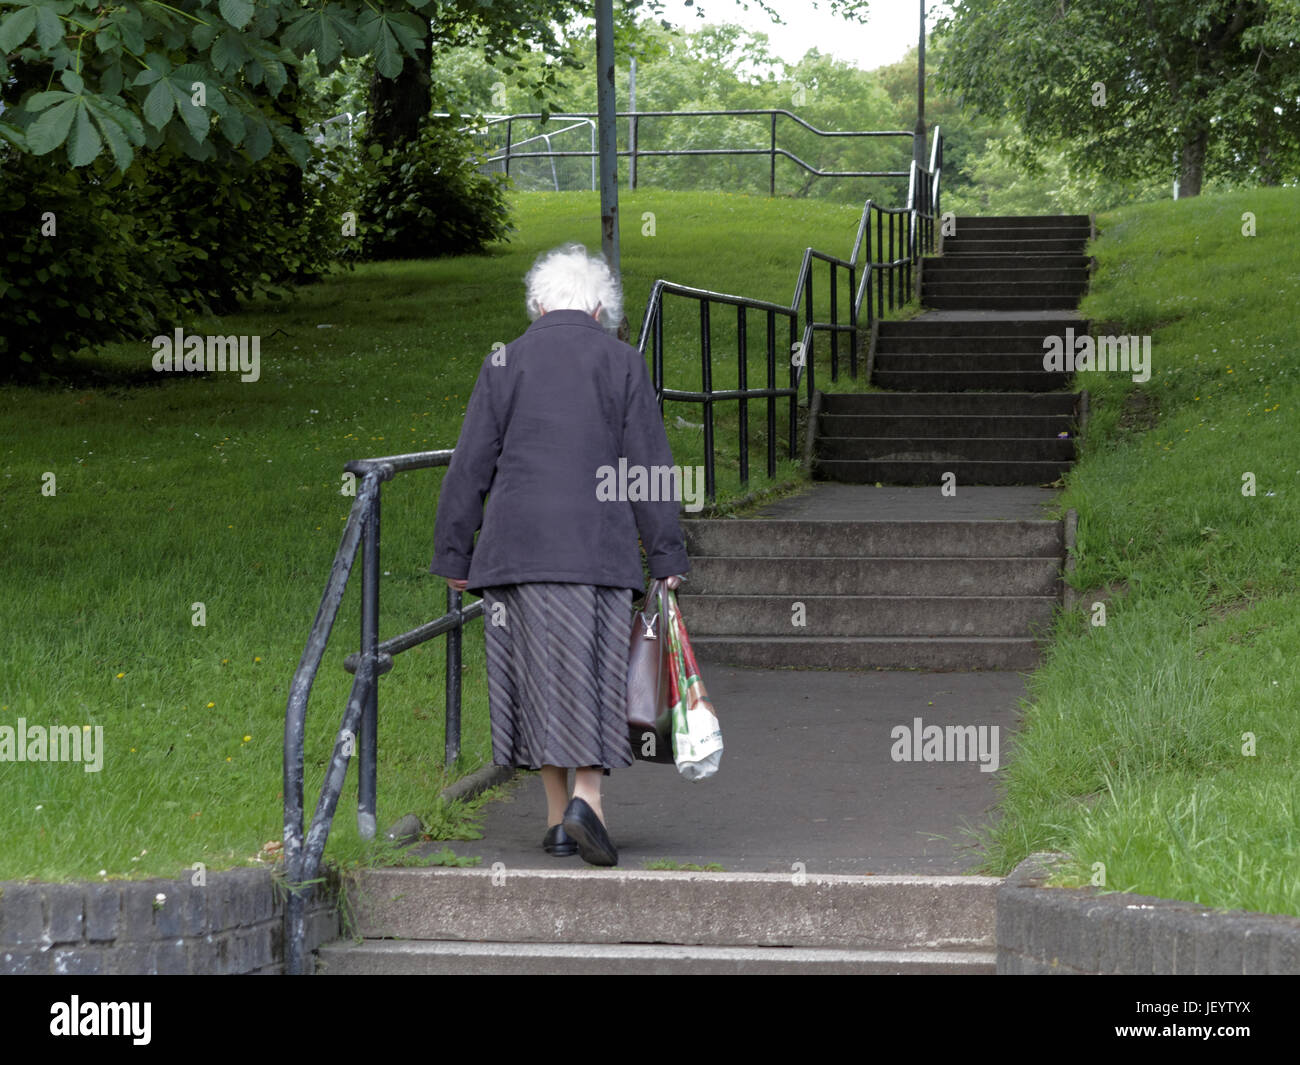 Personne âgée ou les aînés à Glasgow en Écosse de marcher seul vers le haut des escaliers en stationnement carrying shopping bags Banque D'Images